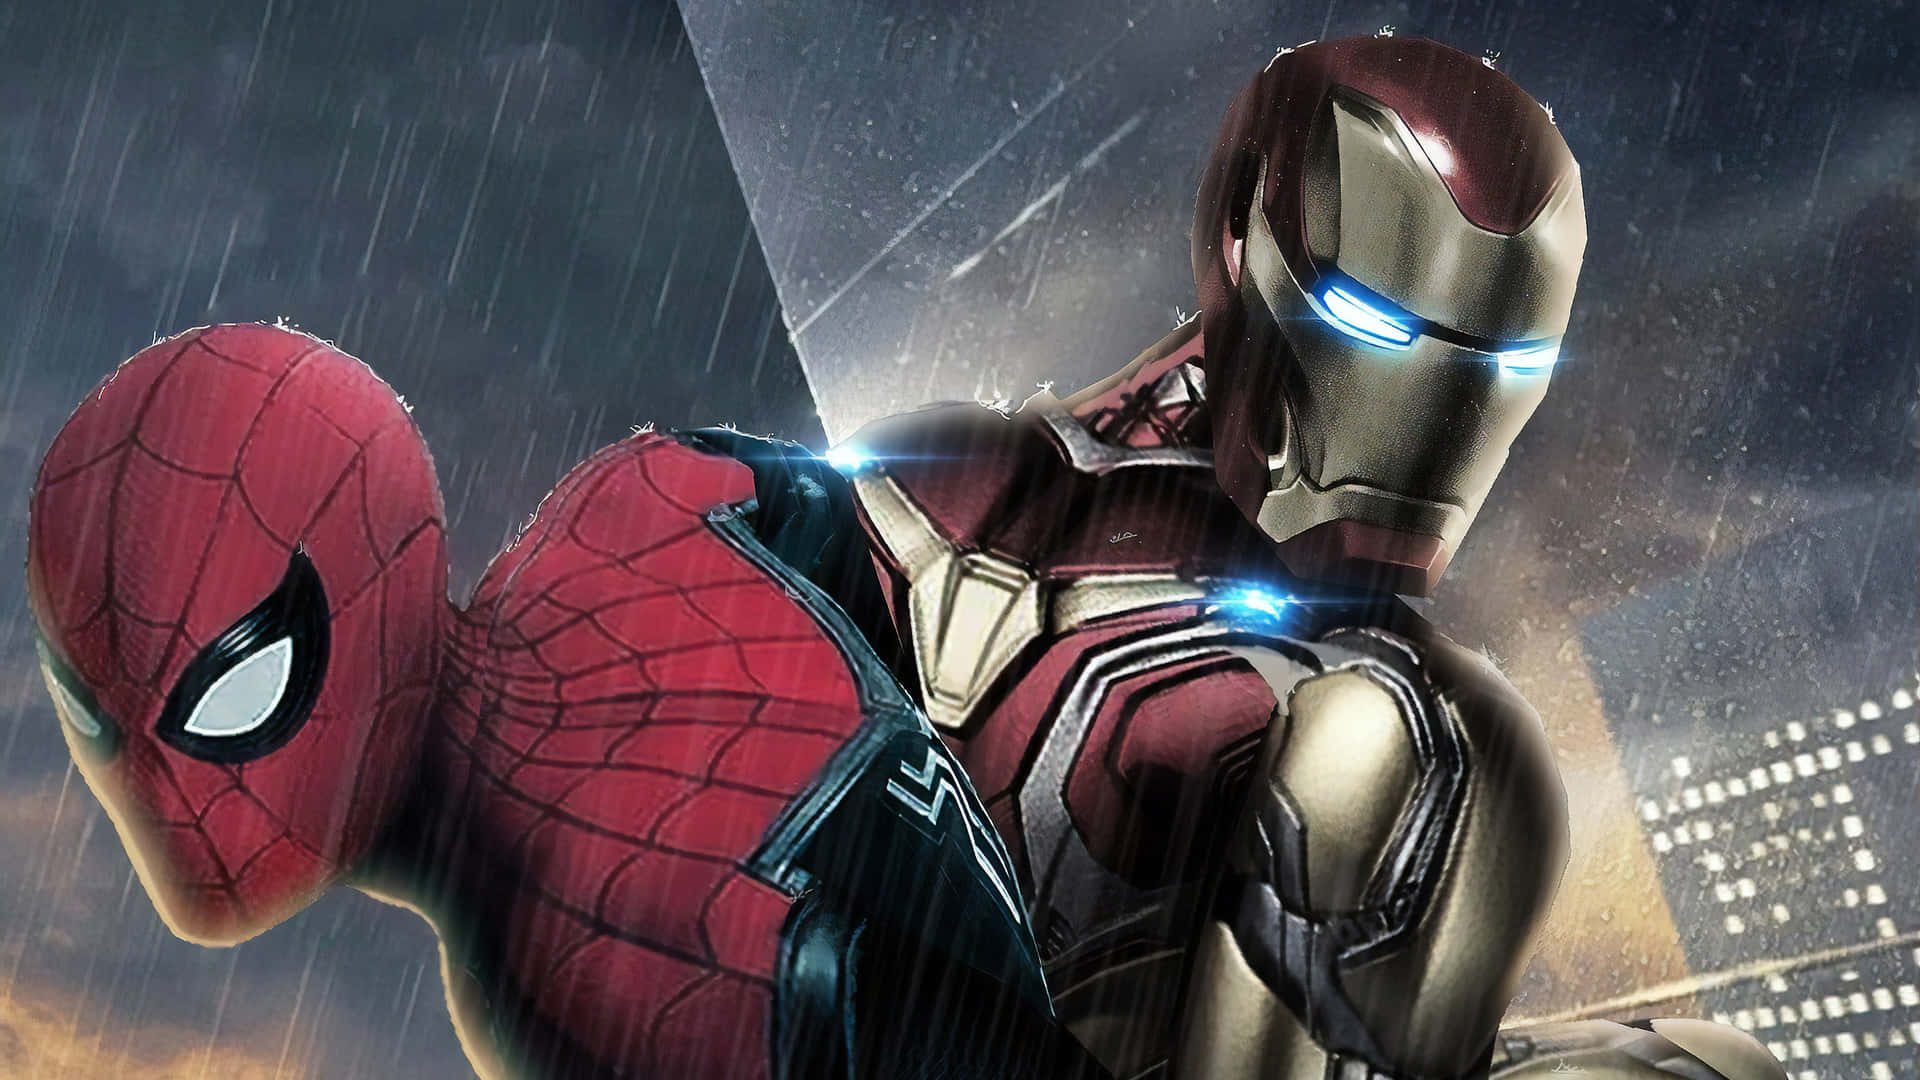 Pink iron man  Iron man, Iron man suit, Super hero games